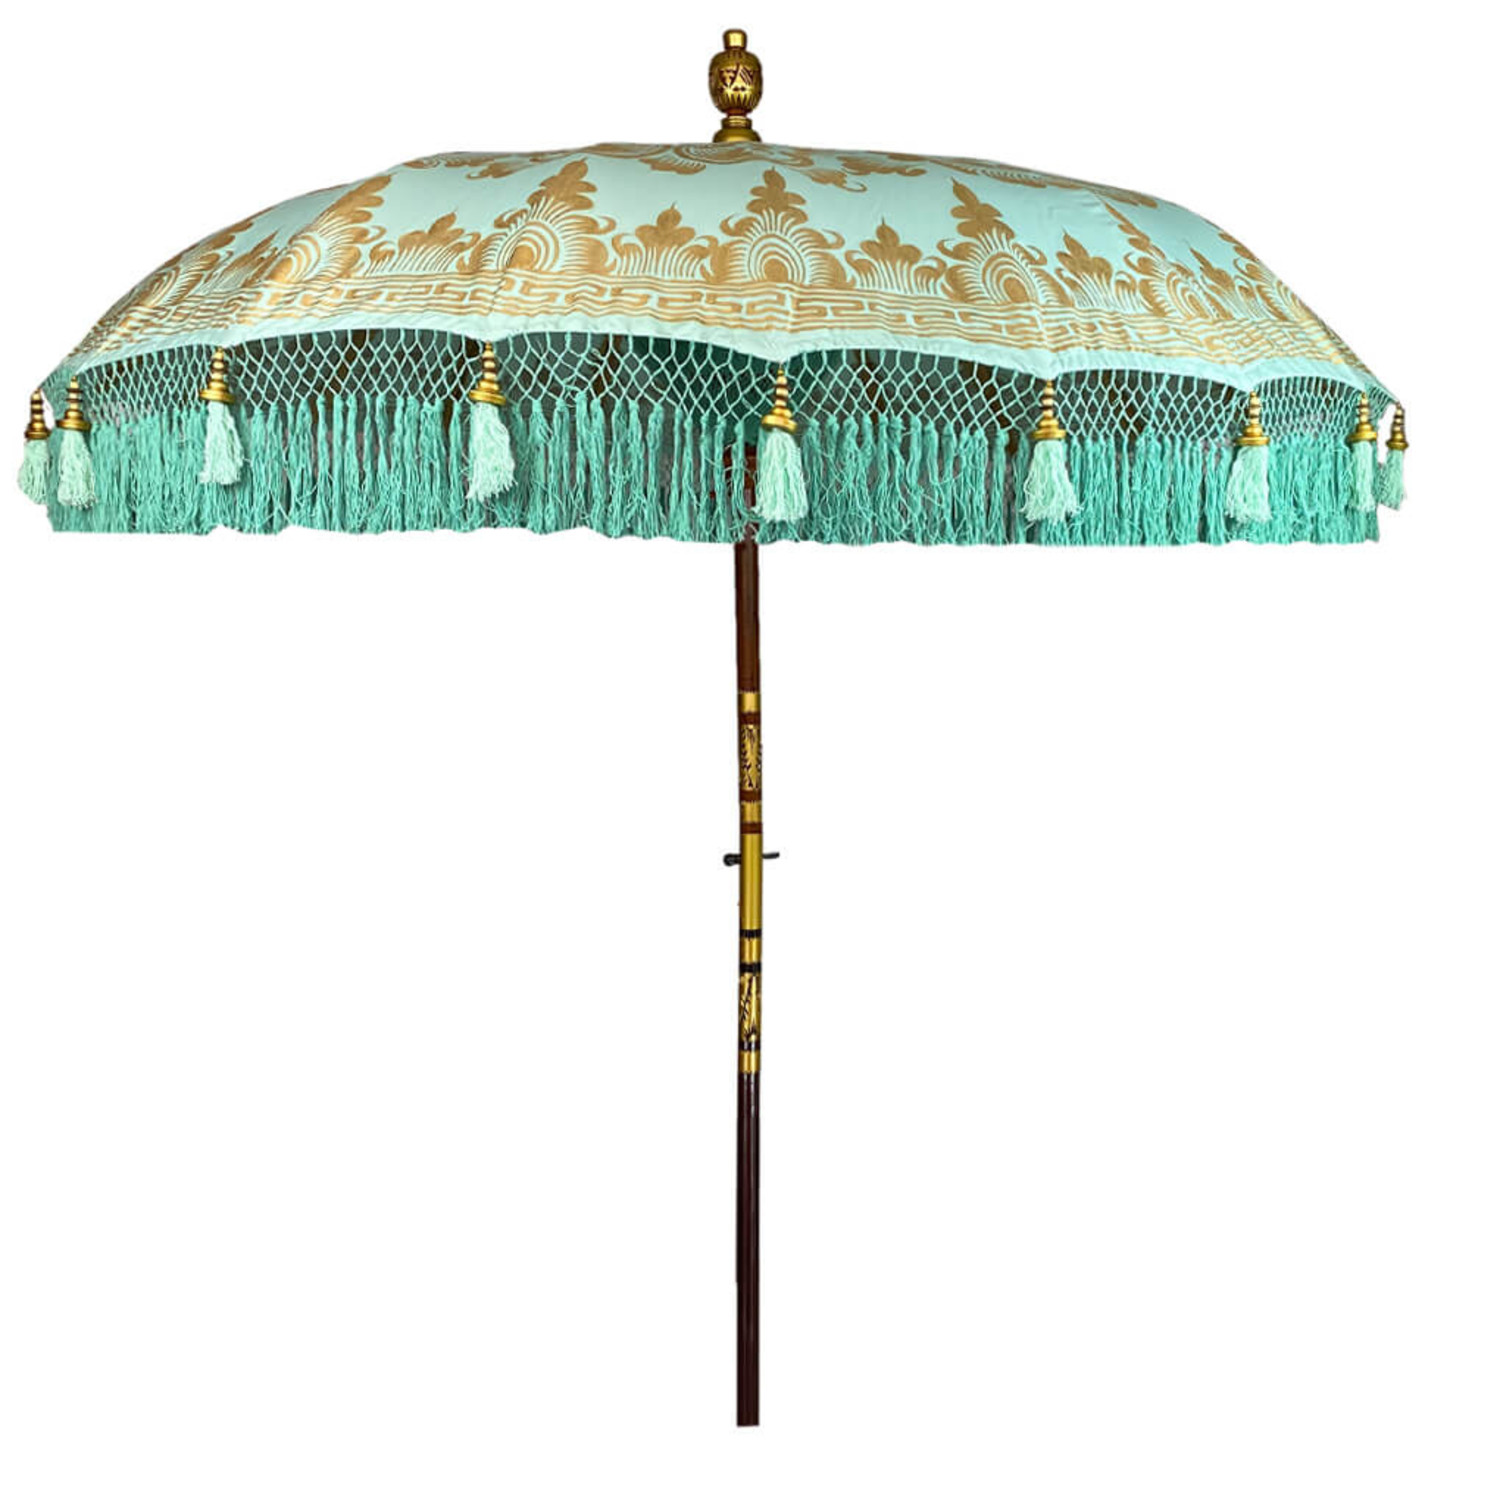 gijzelaar kijk in recorder Turquoise parasol gold - Merel in Wonderland